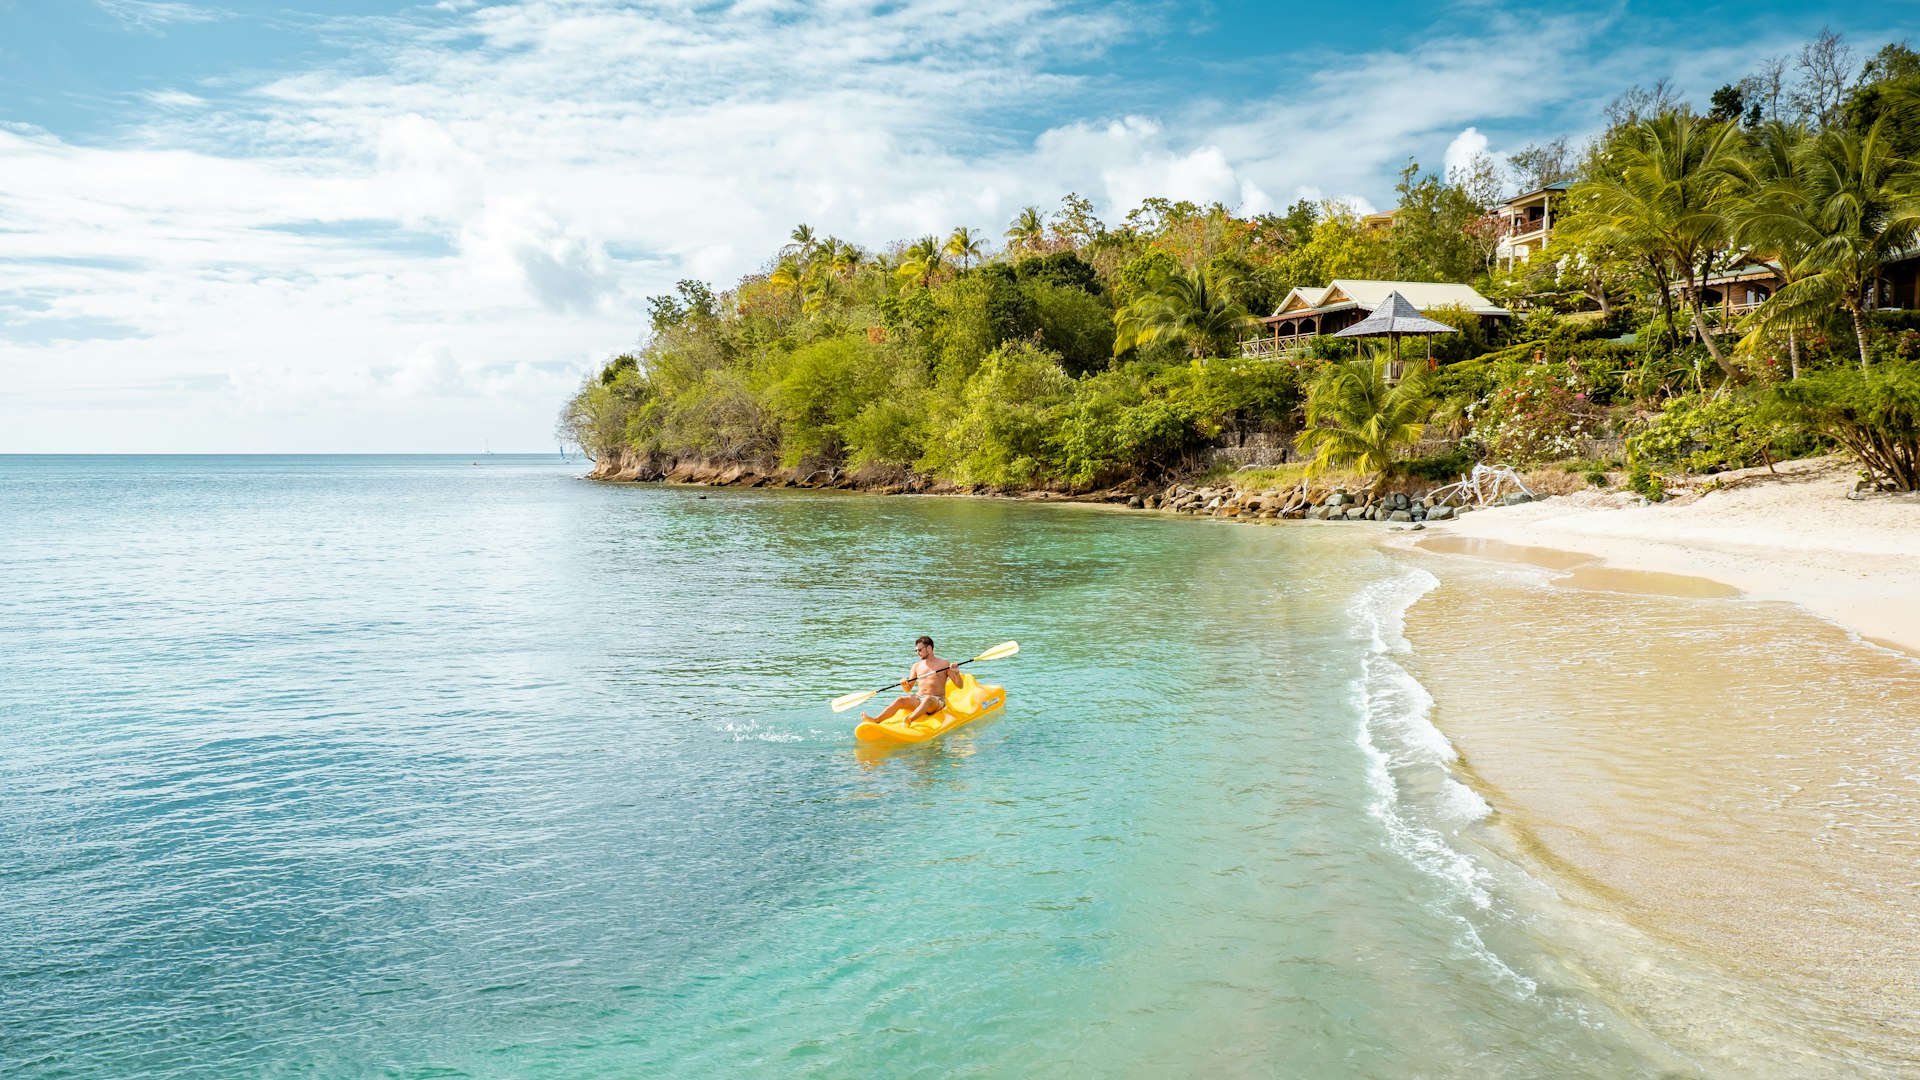 A man on yellow kayak on a tropical beach St Lucia Caribbean